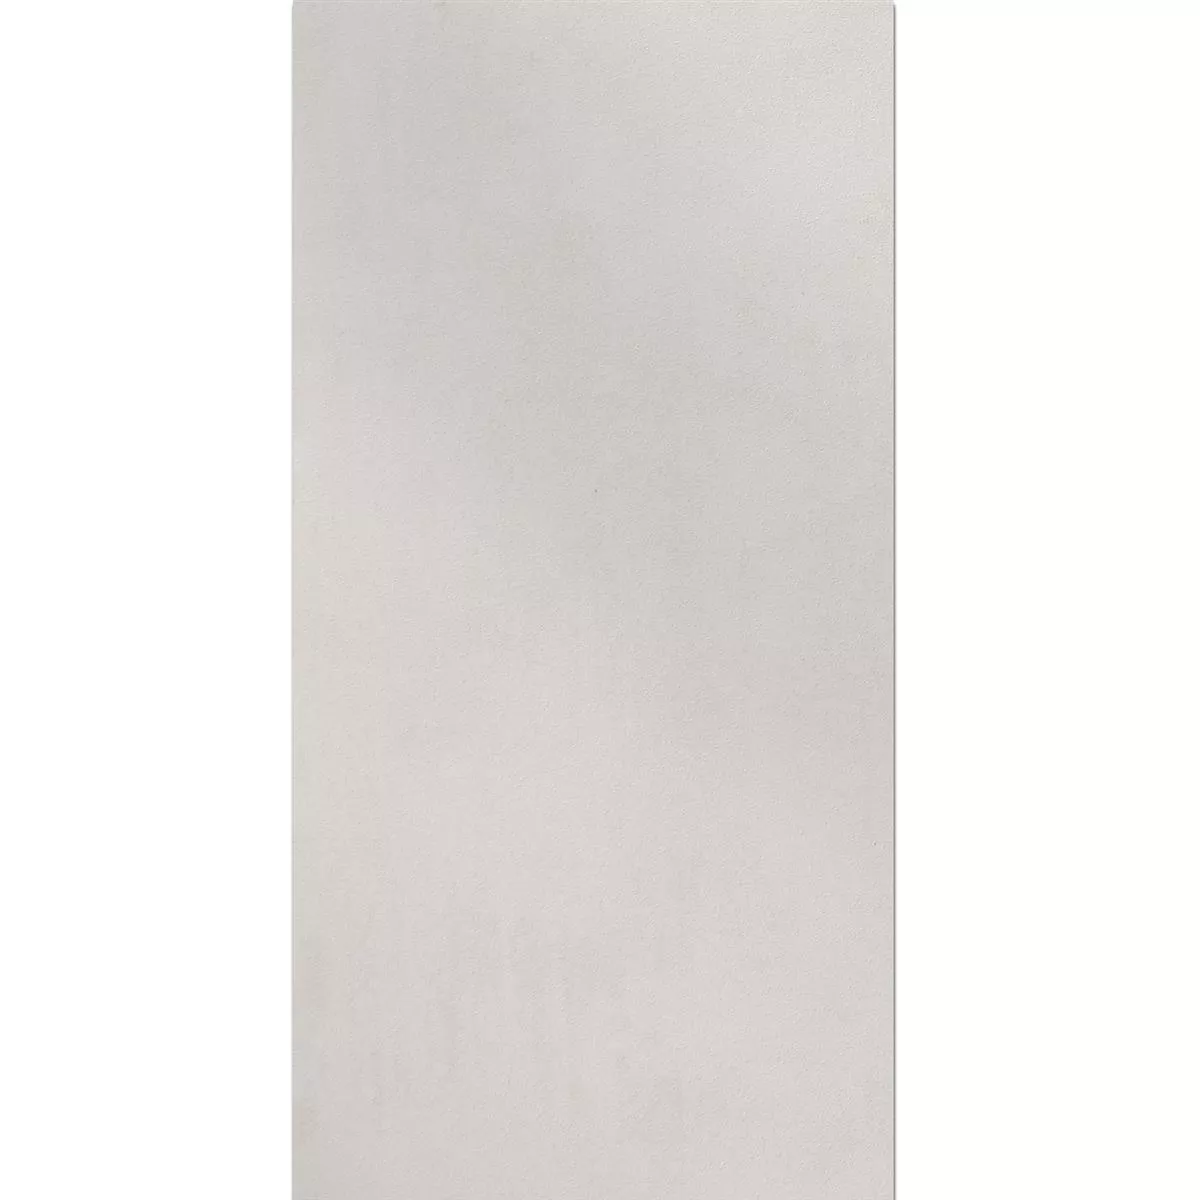 Campione Piastrella Esterni Zeus Cemento Ottica White 60x90cm